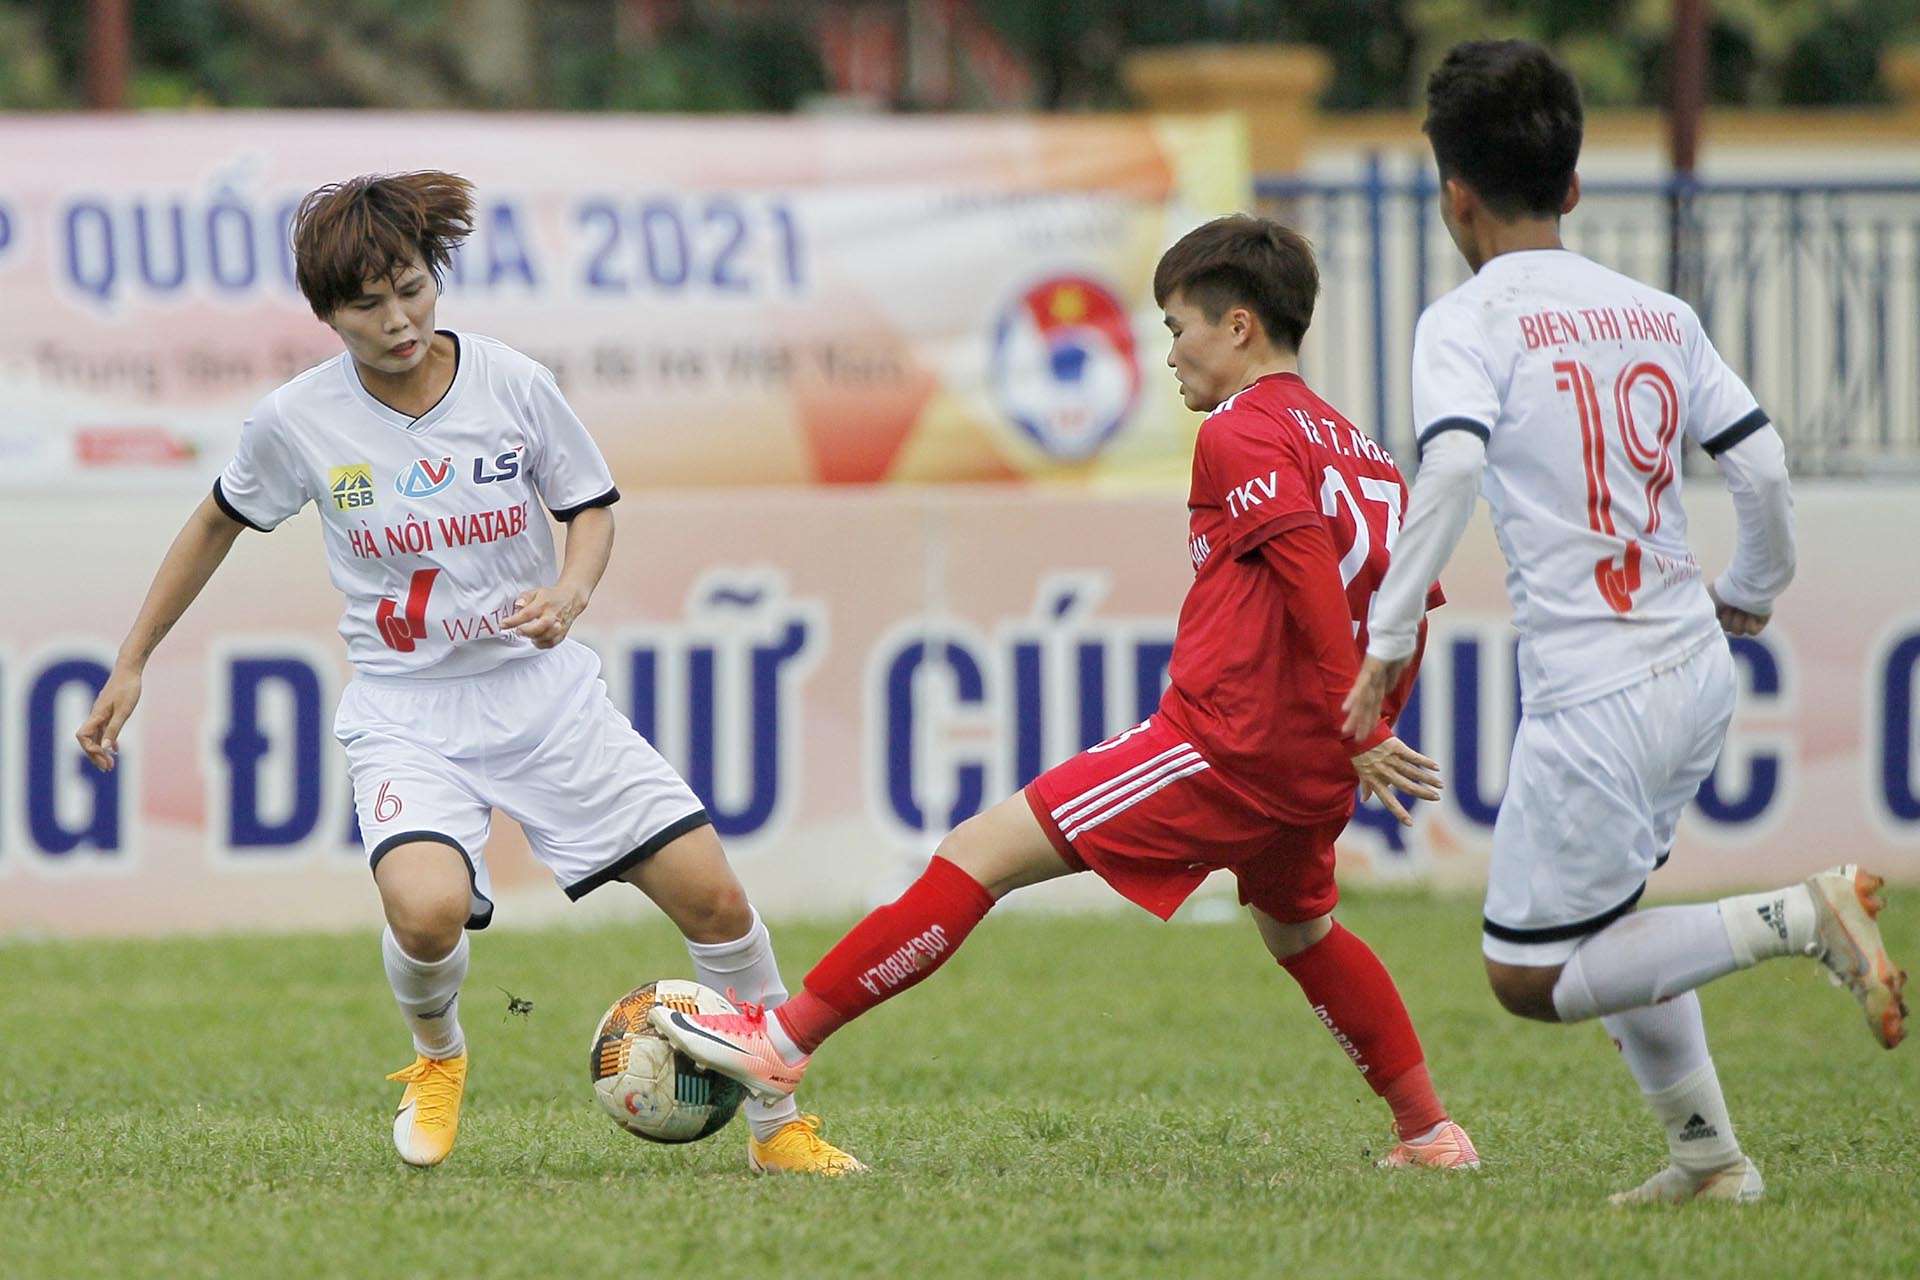 Hà Nội I Watabe (trắng) tranh Cúp vô địch với TP Hồ Chí Minh. (Ảnh: VFF)